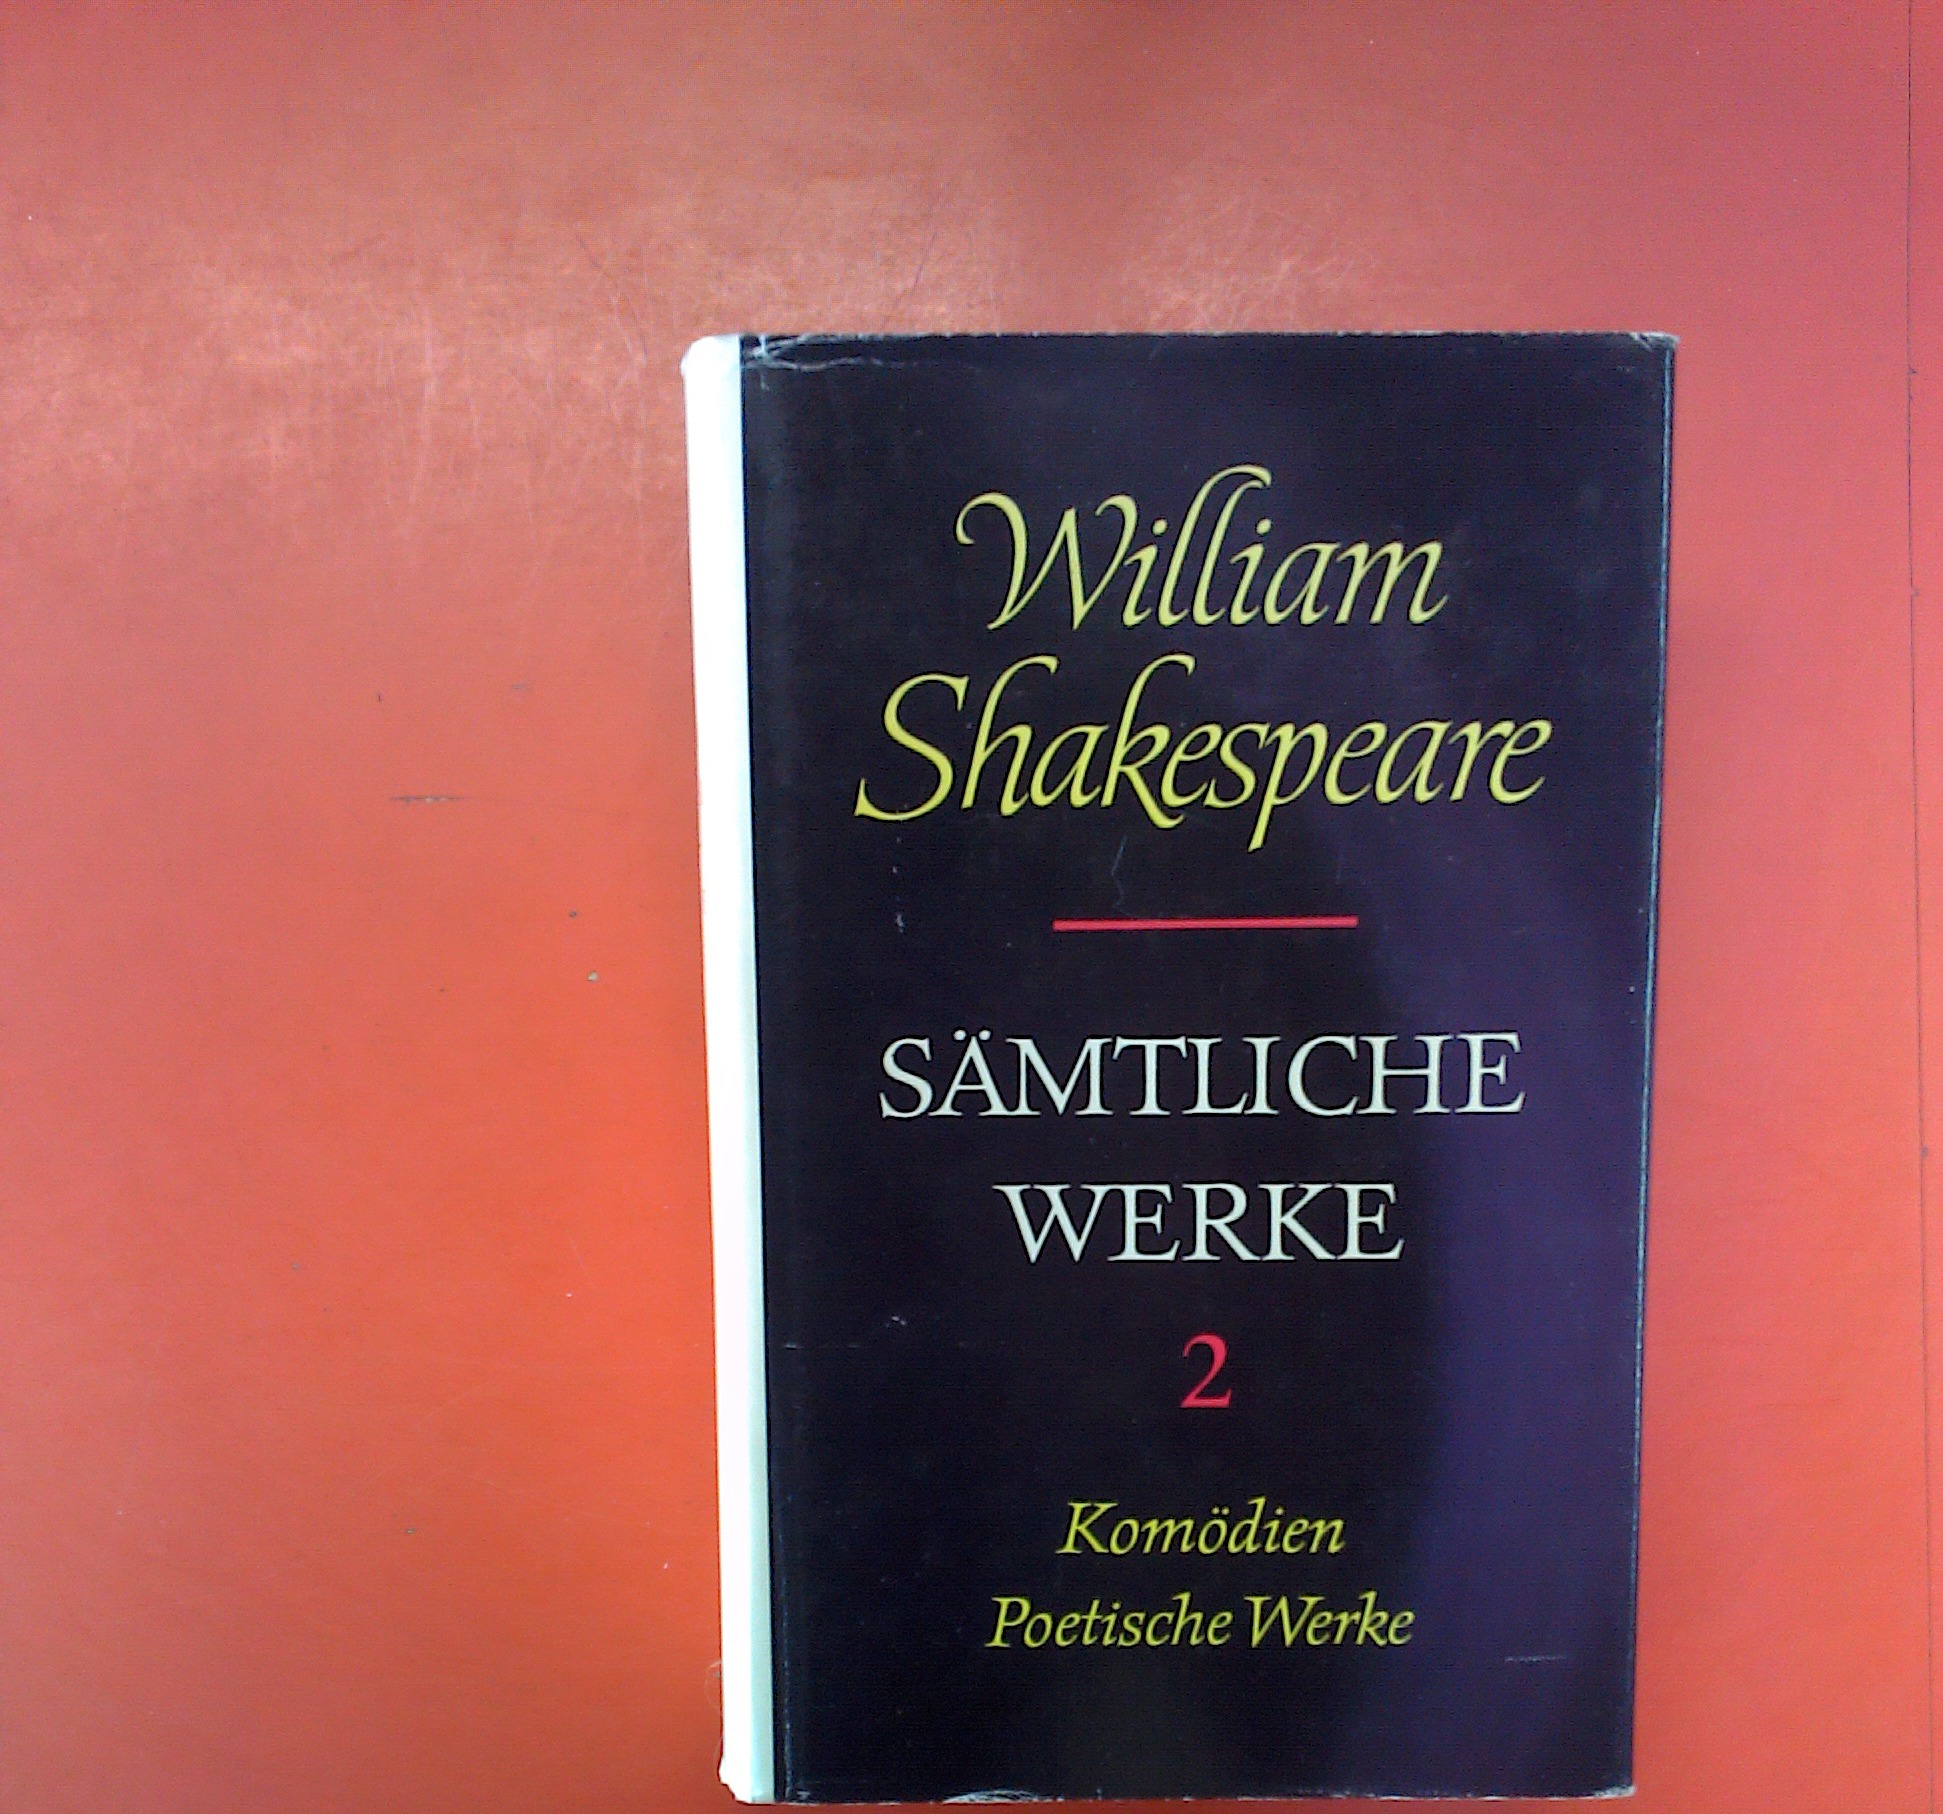 Sämtliche Werke 2: Komödien / Poetische Werke. 4. Auflage. - William Shakespeare / Hrsg: Anselm Schlösser